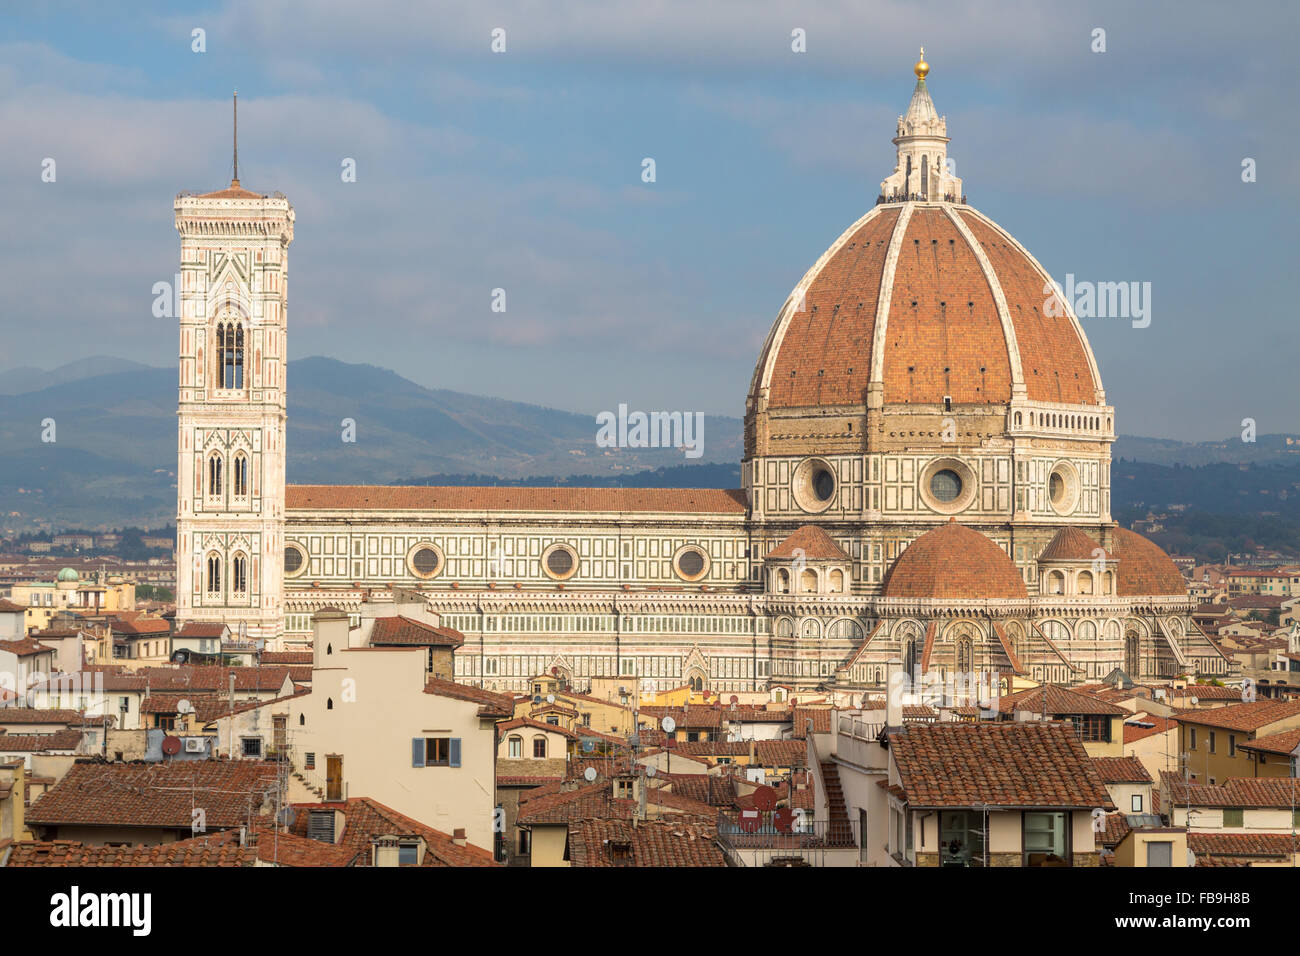 Cathédrale de Santa Maria del Fiore, donnant sur les toits de Florence, Toscane, Italie Banque D'Images